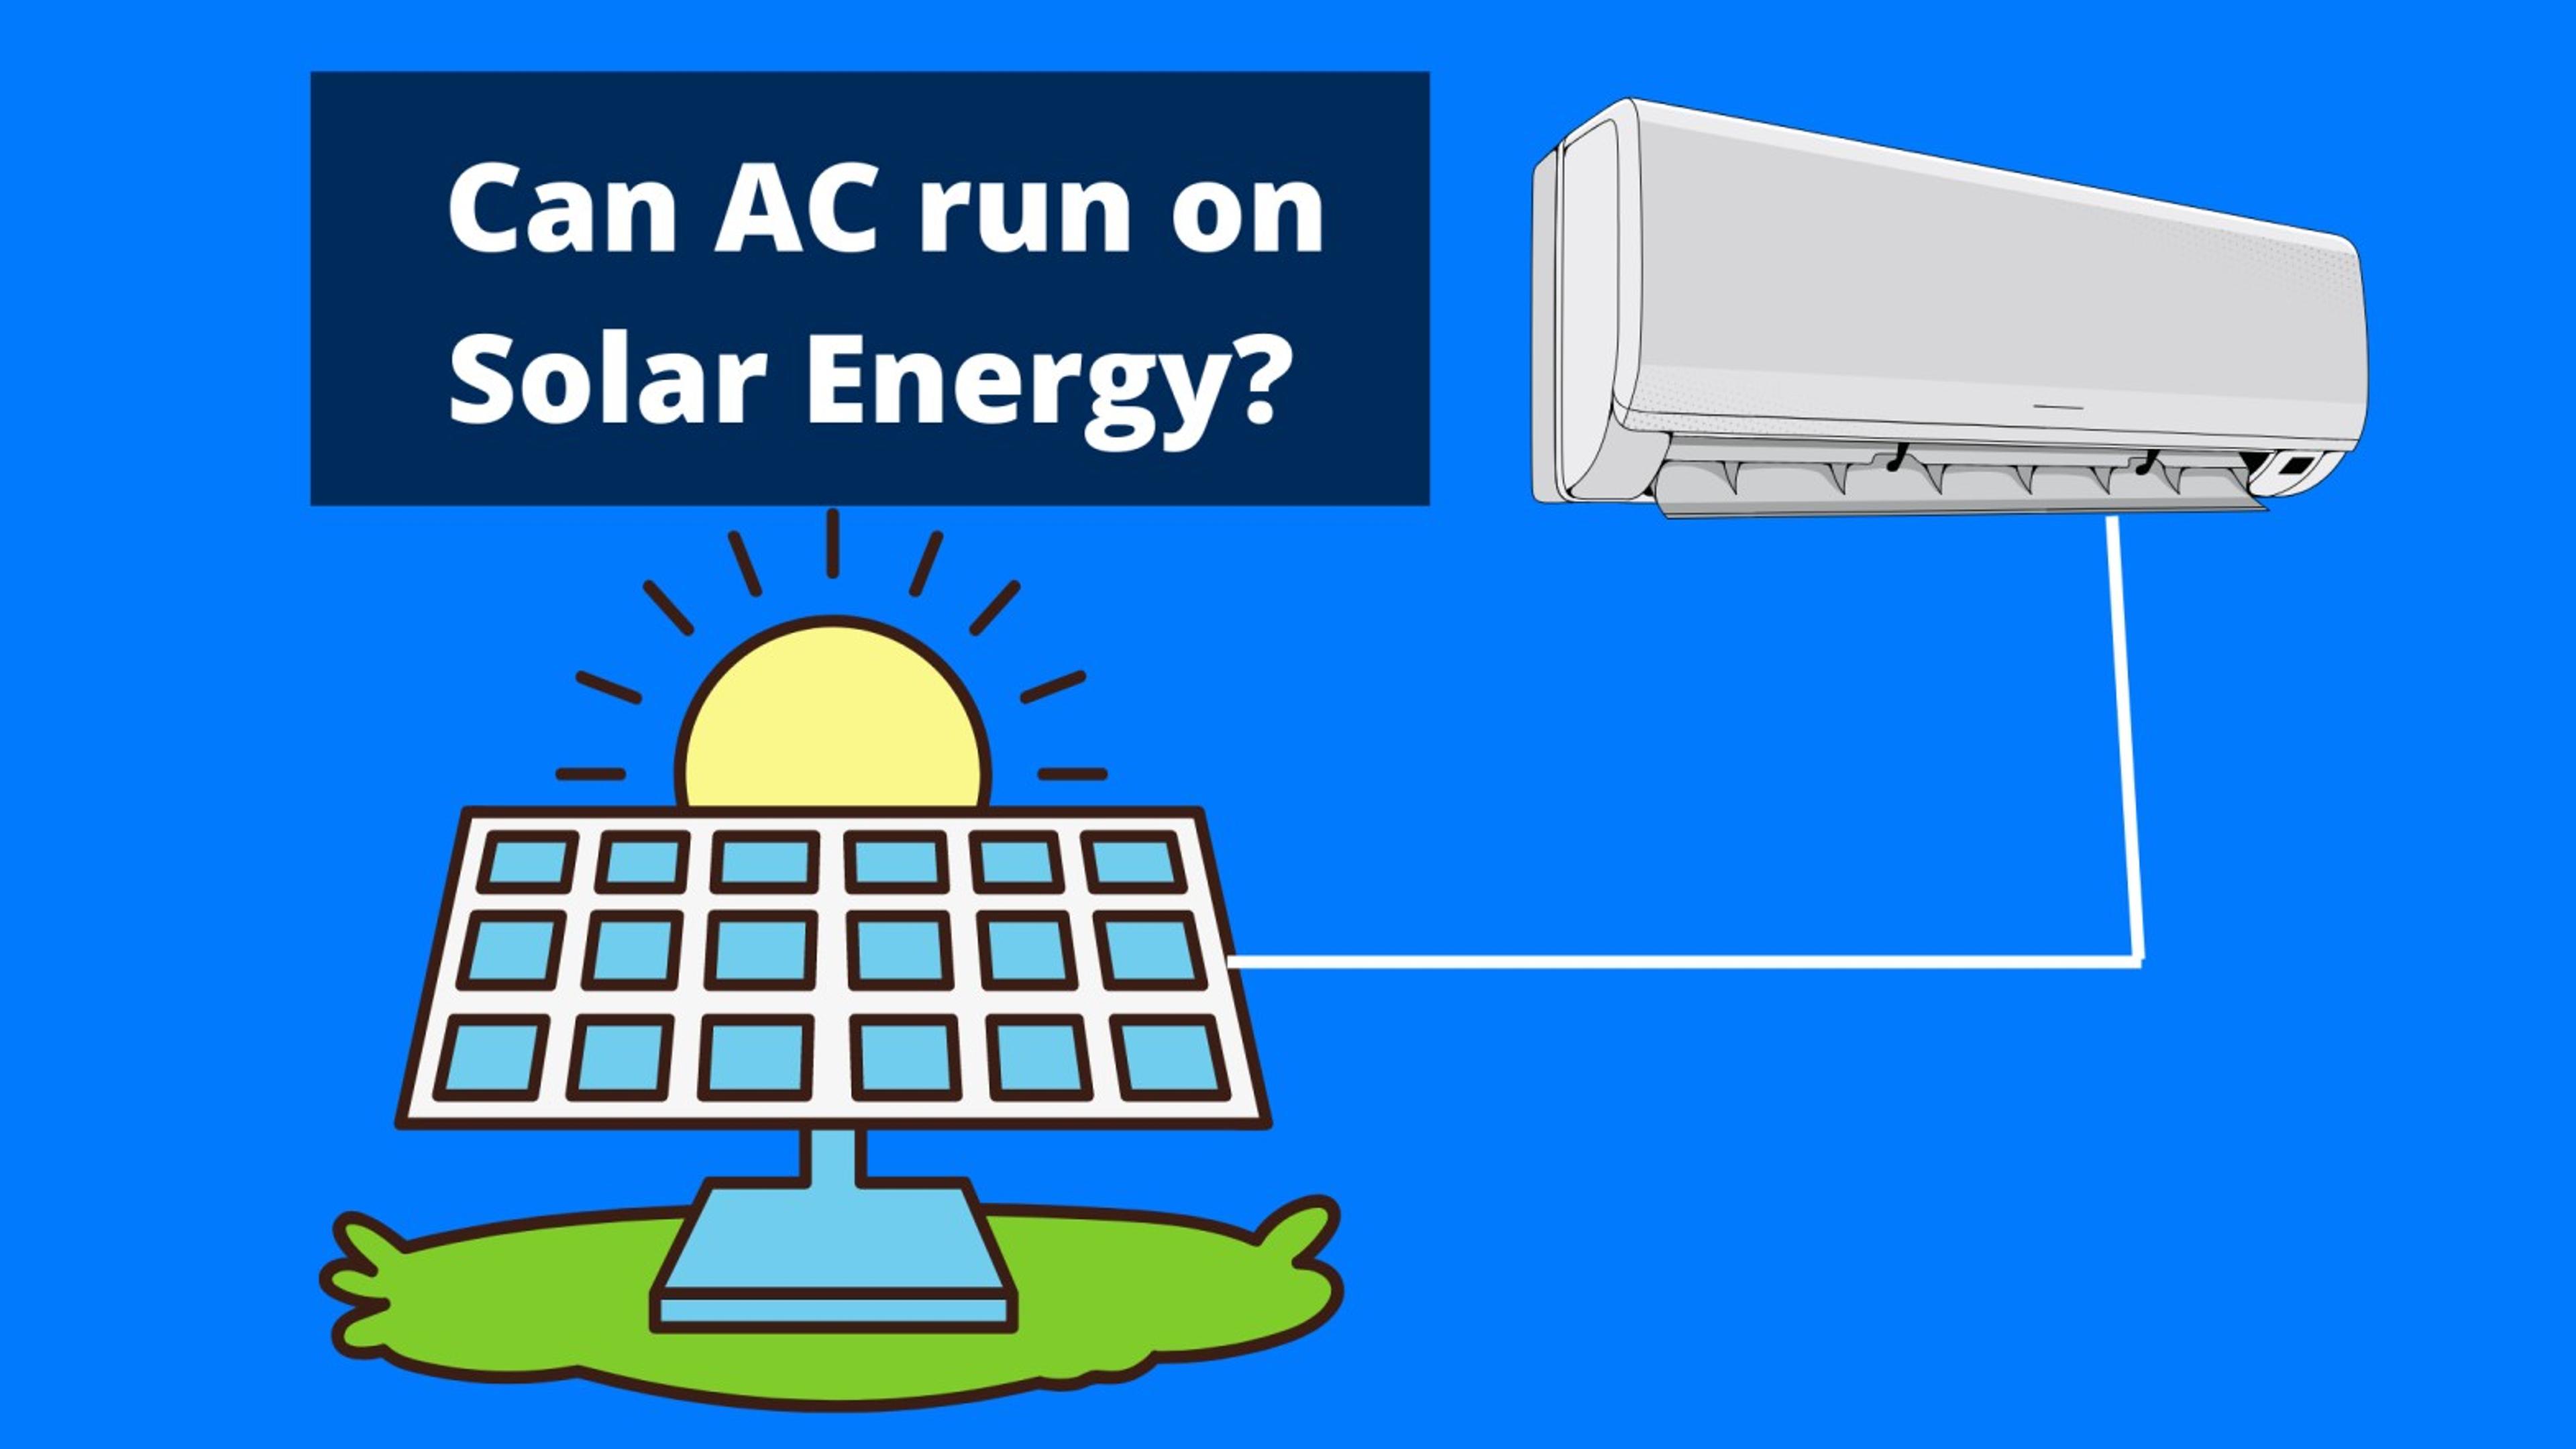 Can AC run on solar energy?